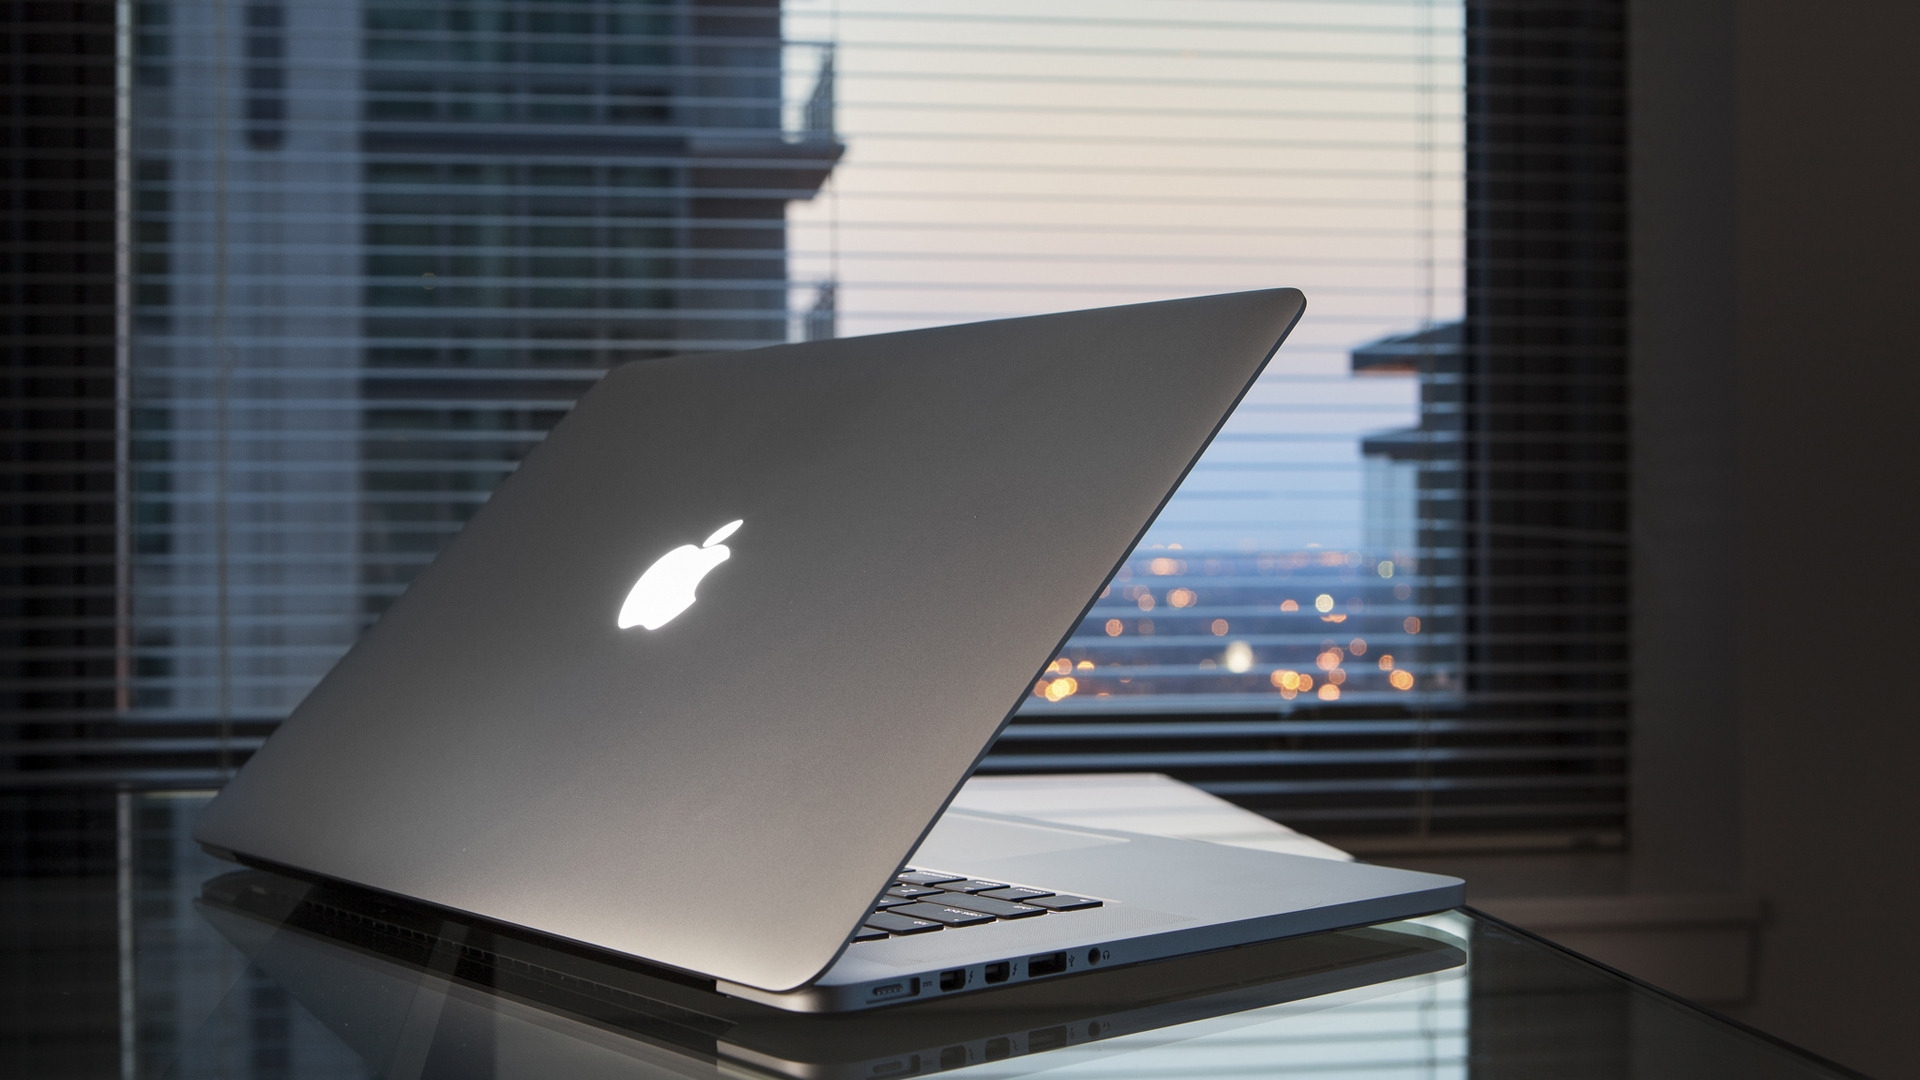 Apple MacBook On Desk for 1920 x 1080 HDTV 1080p resolution